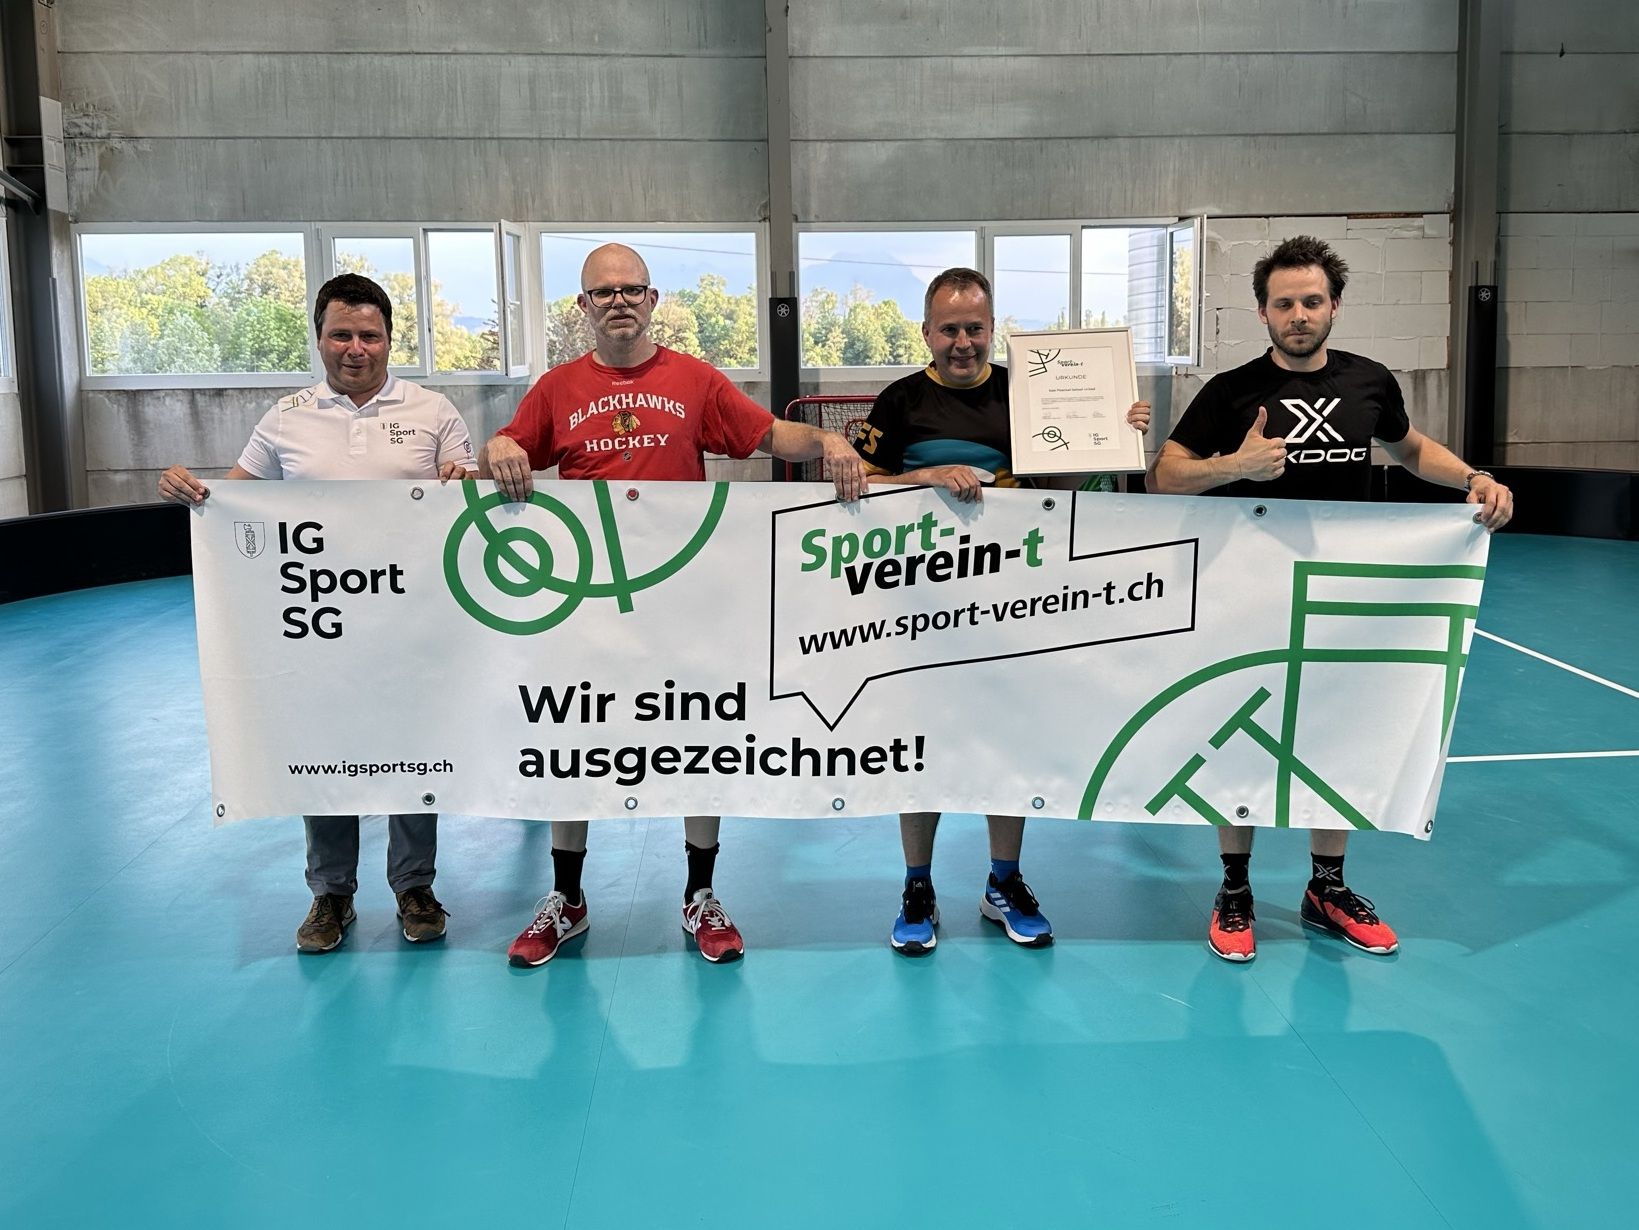 Label Übergabe Sport-Verein-t